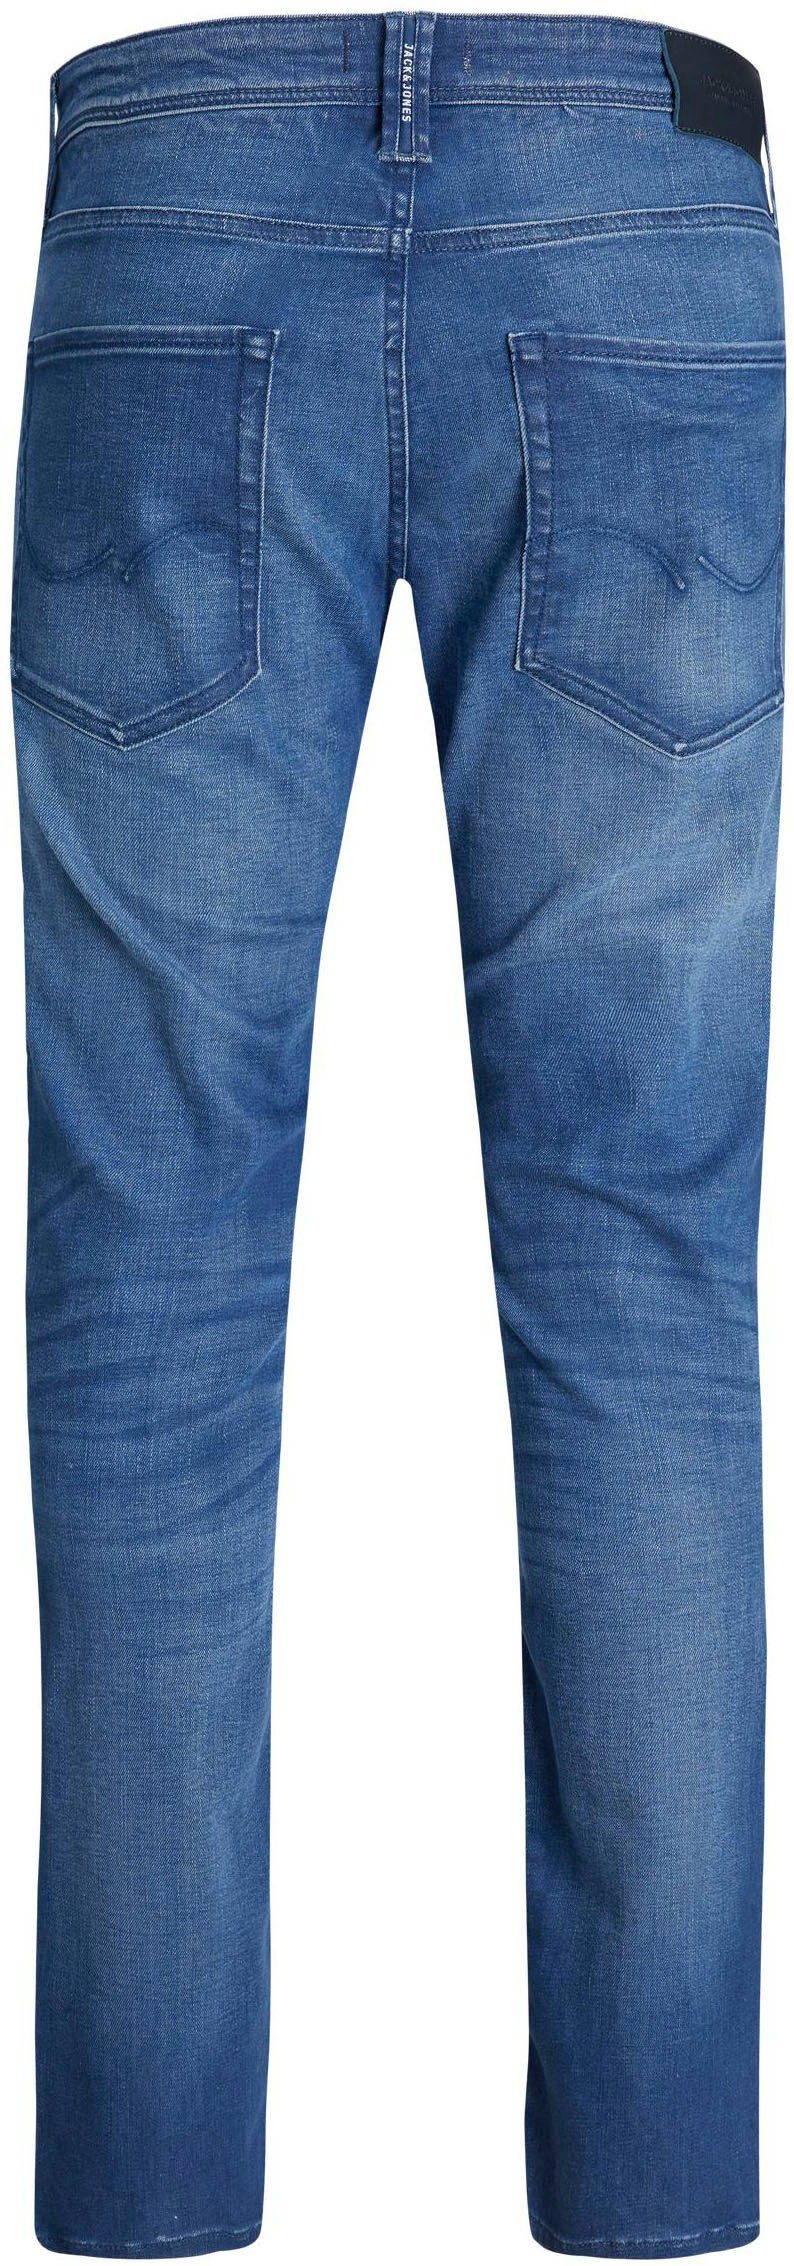 Jack & Jones Slim-fit-Jeans denim TIM blue OLIVER